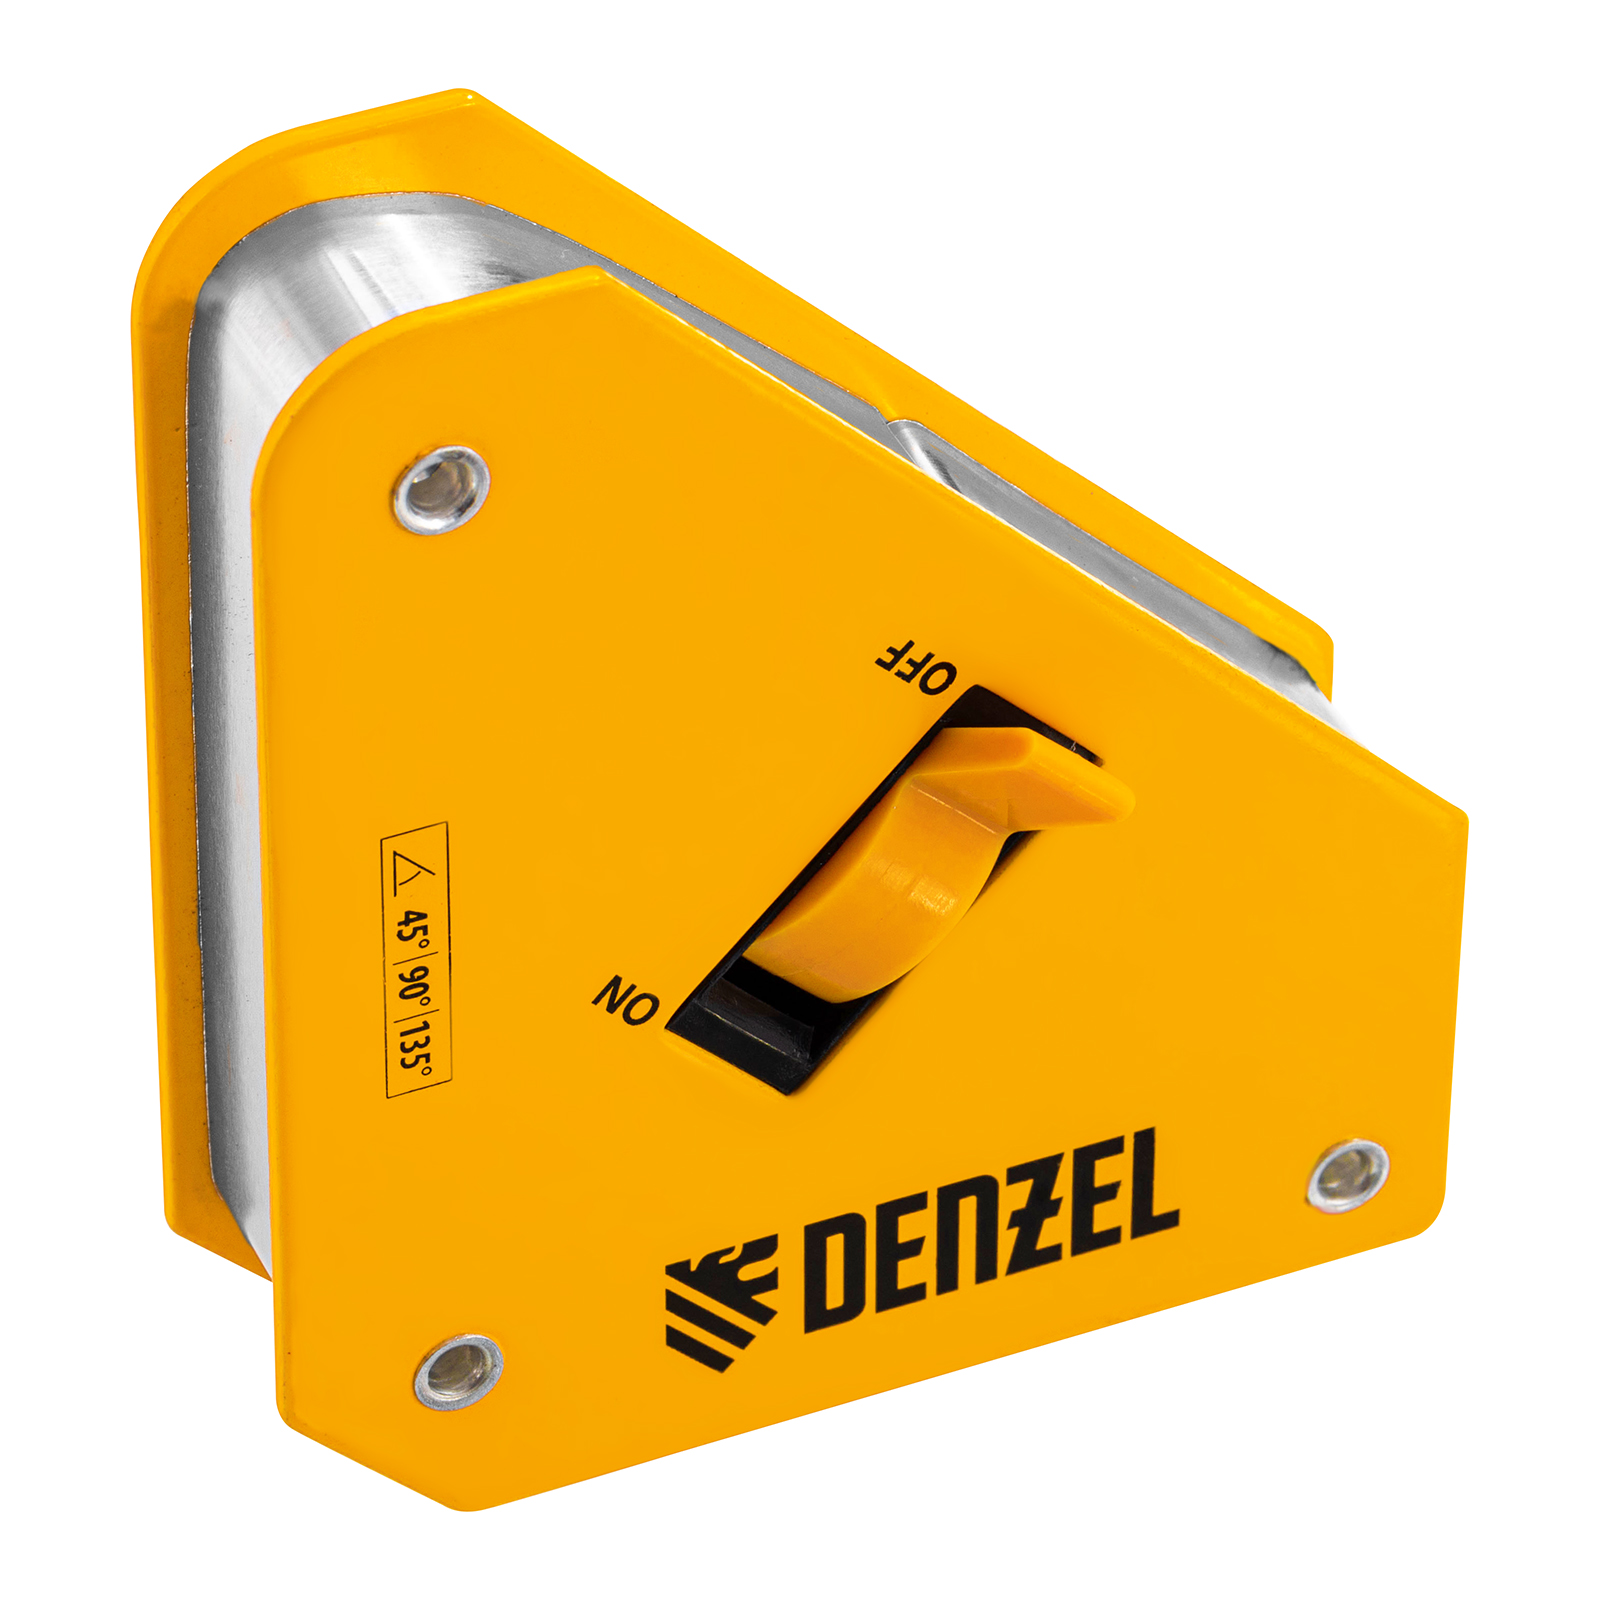 Фиксатор магнитный отключаемый для сварочных работ DENZEL усилие 30 LB, 45х90 град. 97561 магнитный фиксатор для сварочных работ ultima